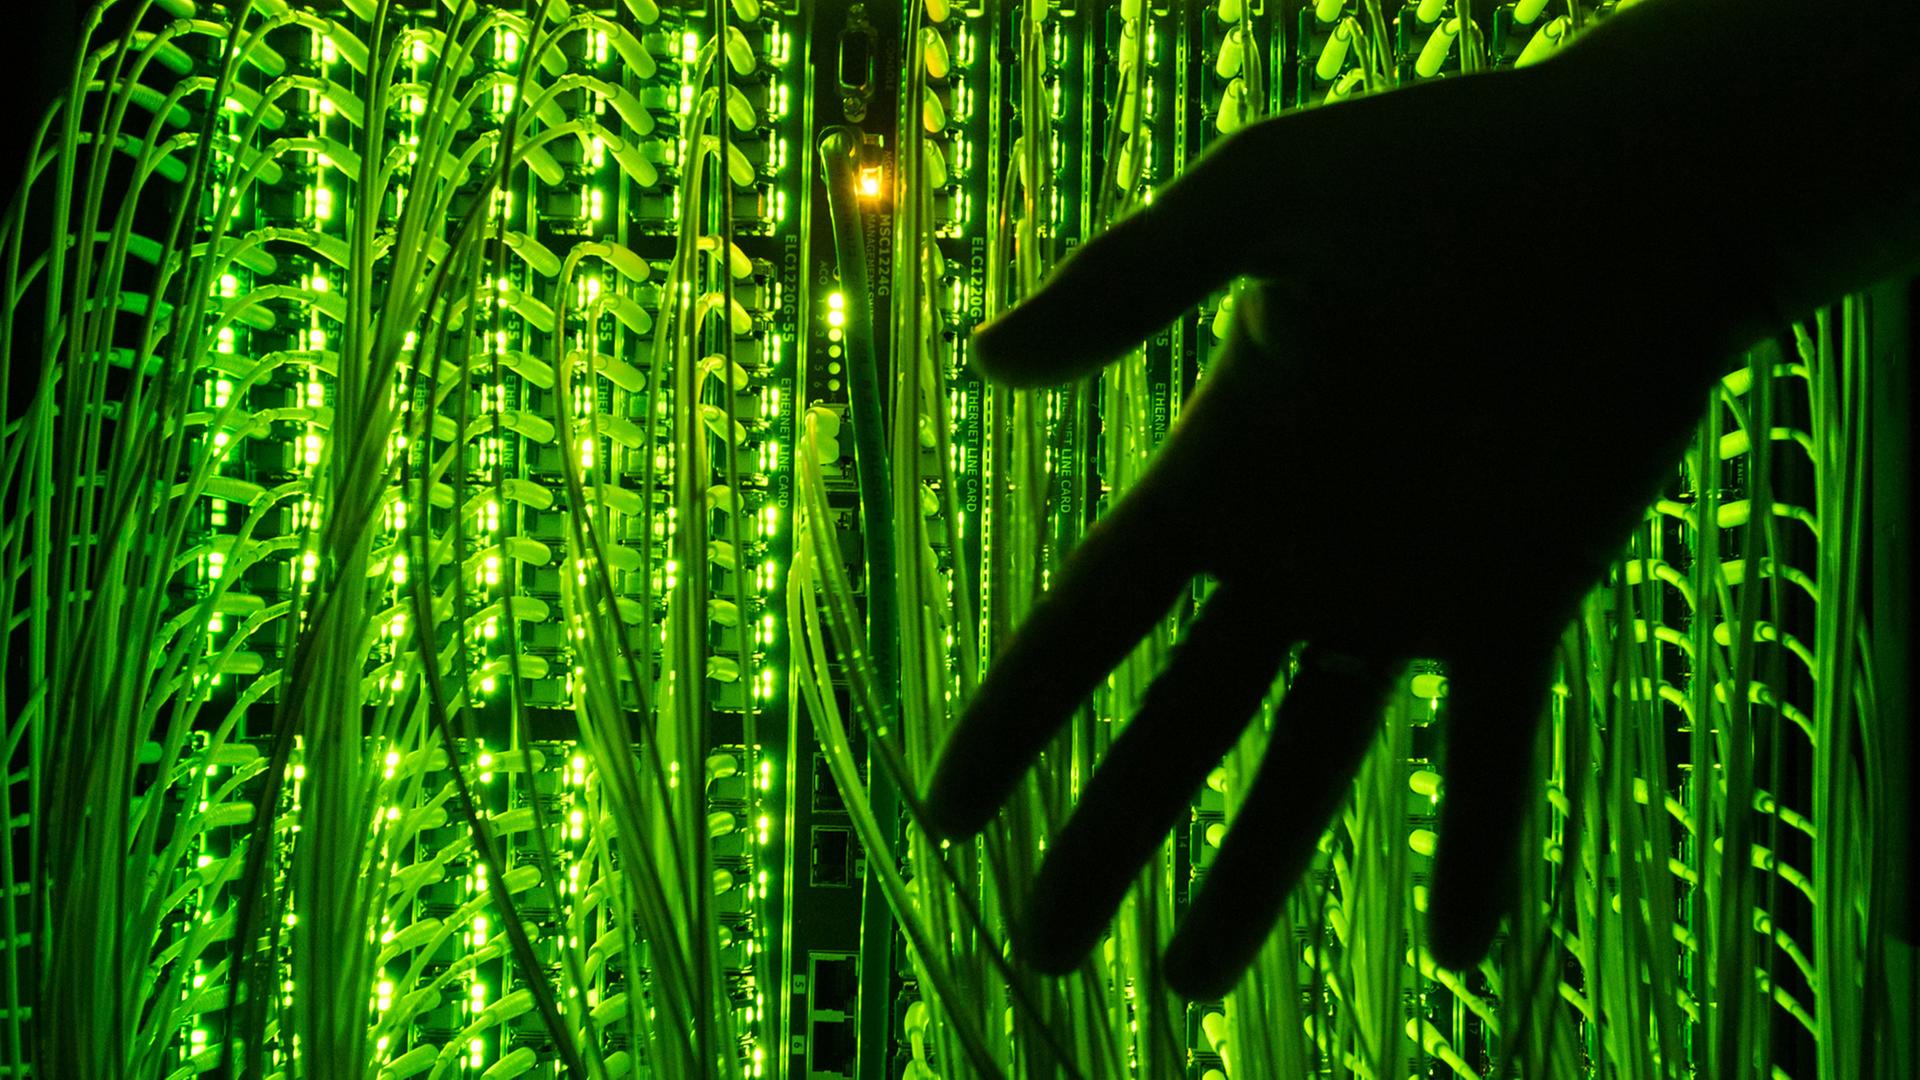 Eine Hand berührt grün beleuchtete Glasfaserkabel, die zur Übertragung von Hochgeschwindigkeitsinternet zusammenlaufen. 